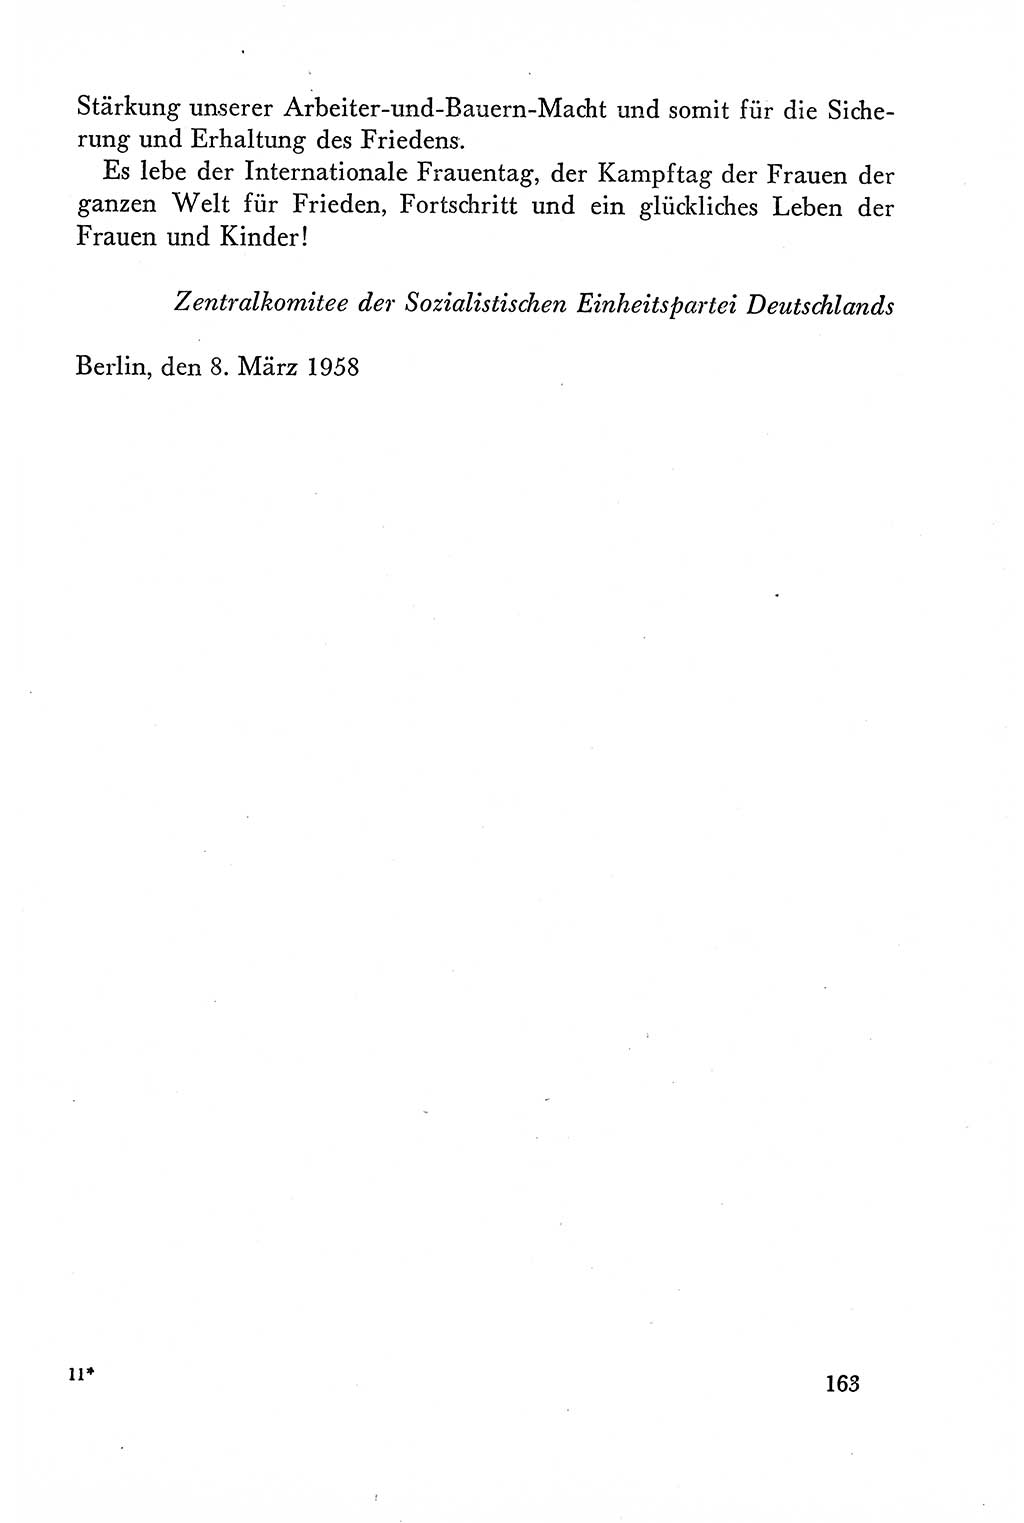 Dokumente der Sozialistischen Einheitspartei Deutschlands (SED) [Deutsche Demokratische Republik (DDR)] 1958-1959, Seite 163 (Dok. SED DDR 1958-1959, S. 163)